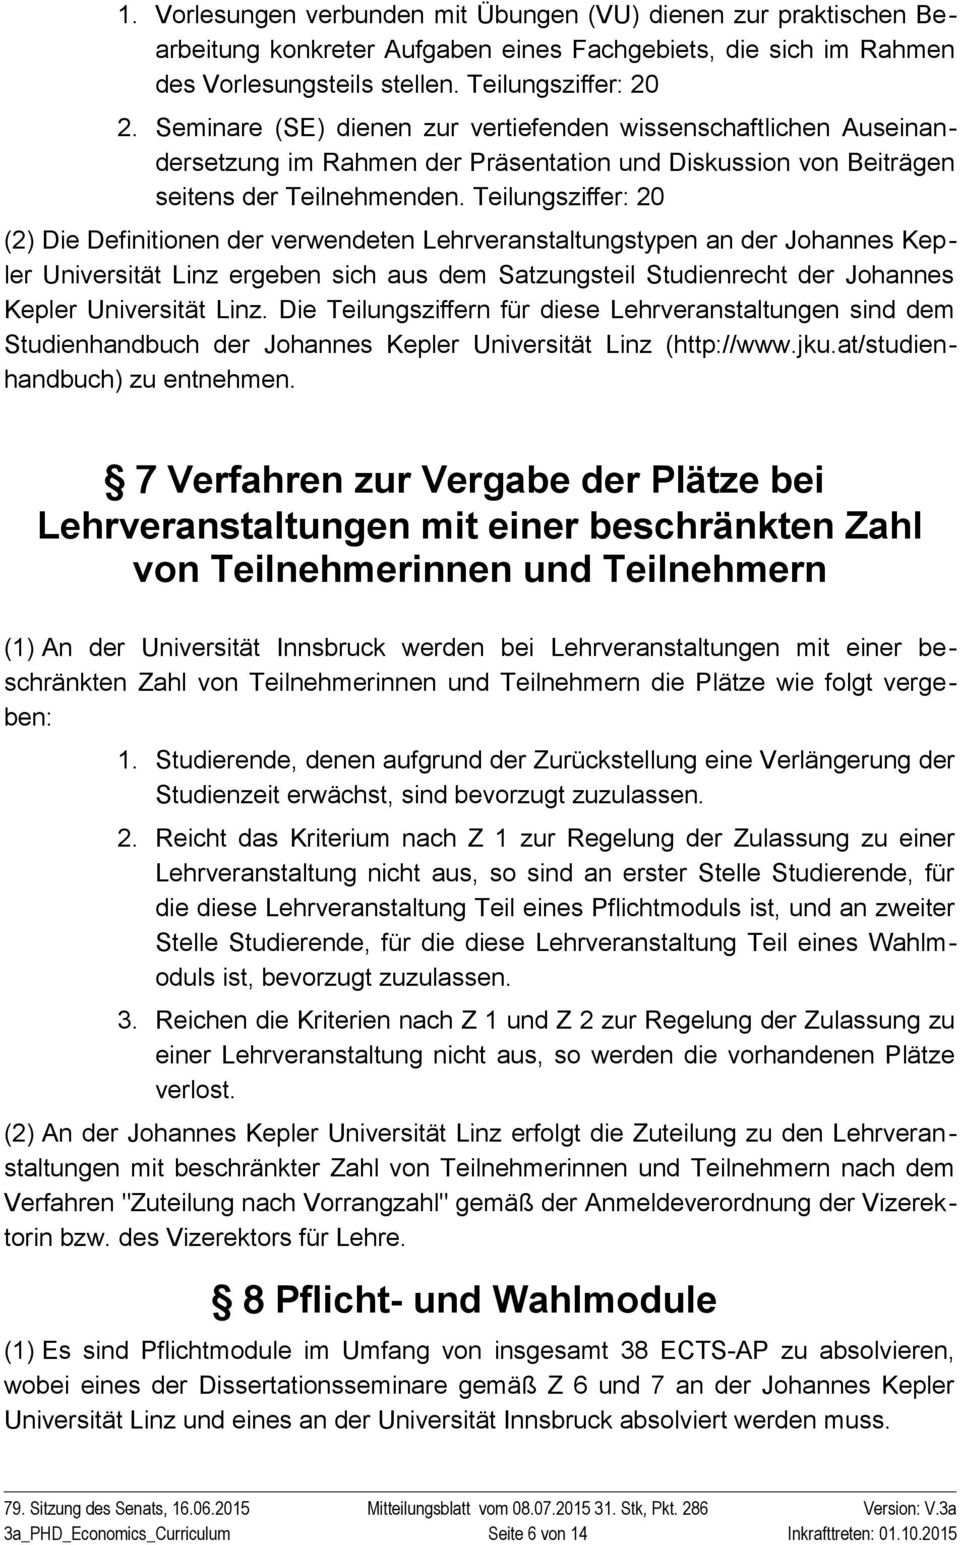 Teilungsziffer: 20 (2) Die Definitionen der verwendeten Lehrveranstaltungstypen an der Johannes Kepler Universität Linz ergeben sich aus dem Satzungsteil Studienrecht der Johannes Kepler Universität